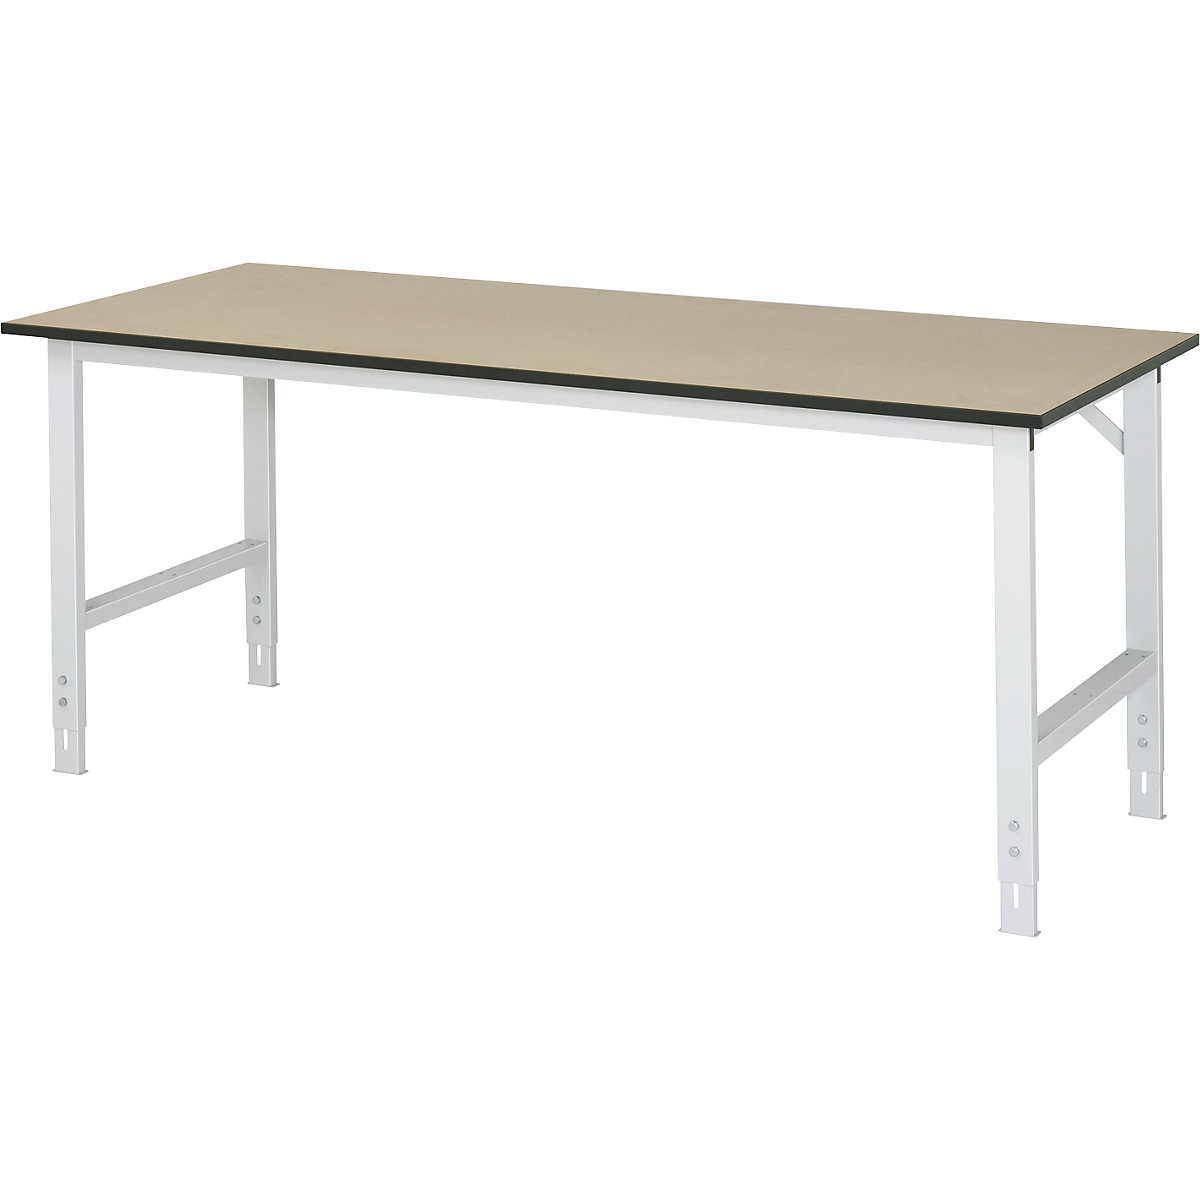 Munkaasztal, állítható magasságú – RAU, 760 – 1080 mm, MDF-lap, szé x mé 2000 x 800 mm, világosszürke-6